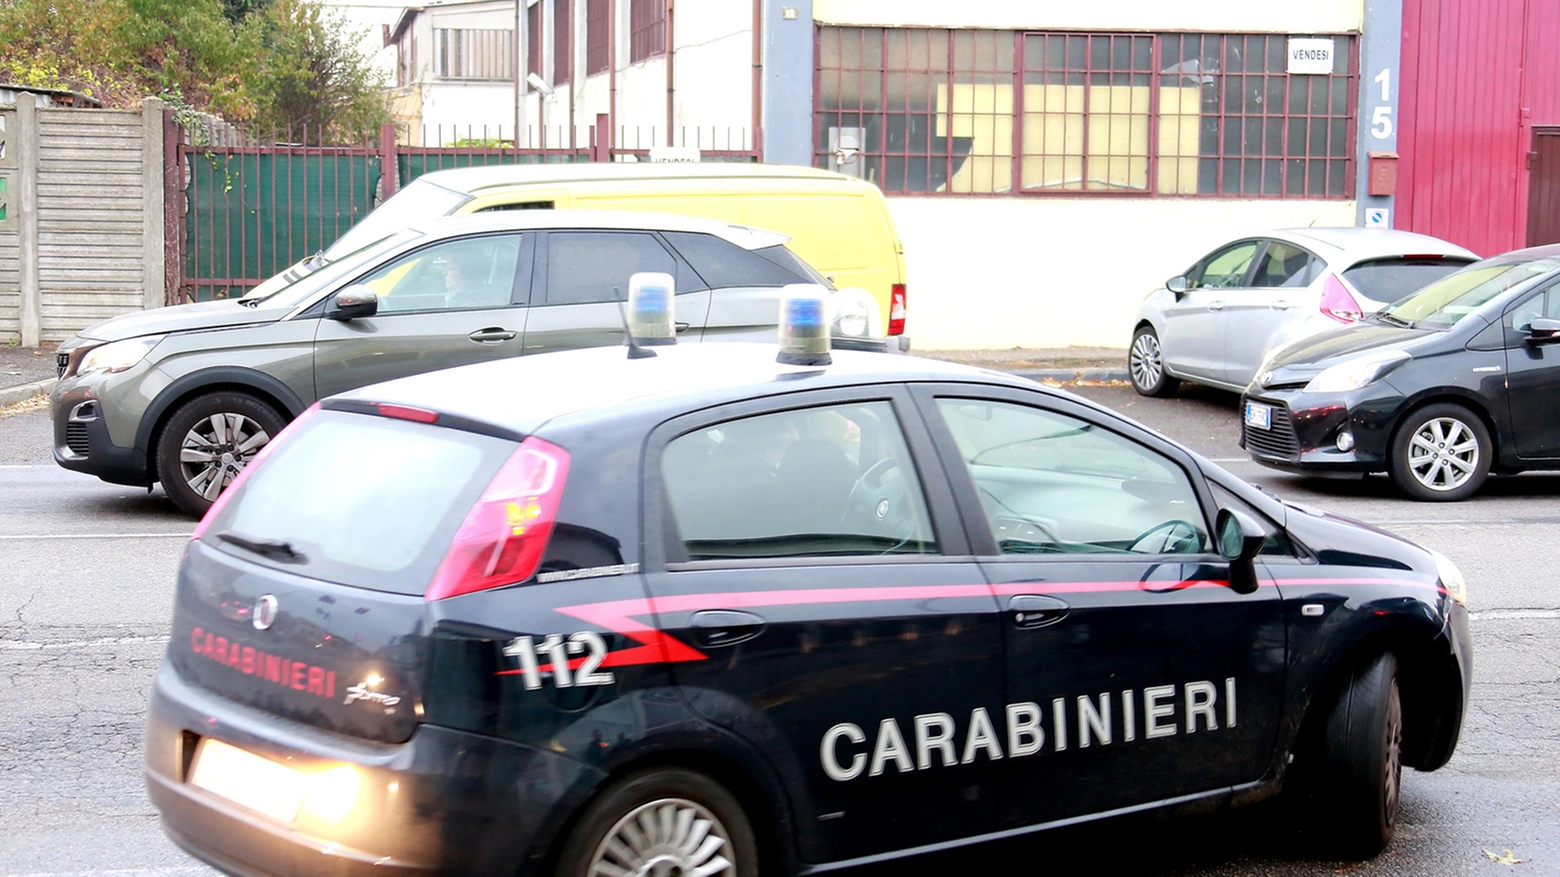 Auto carabinieri (Fotowebgio)